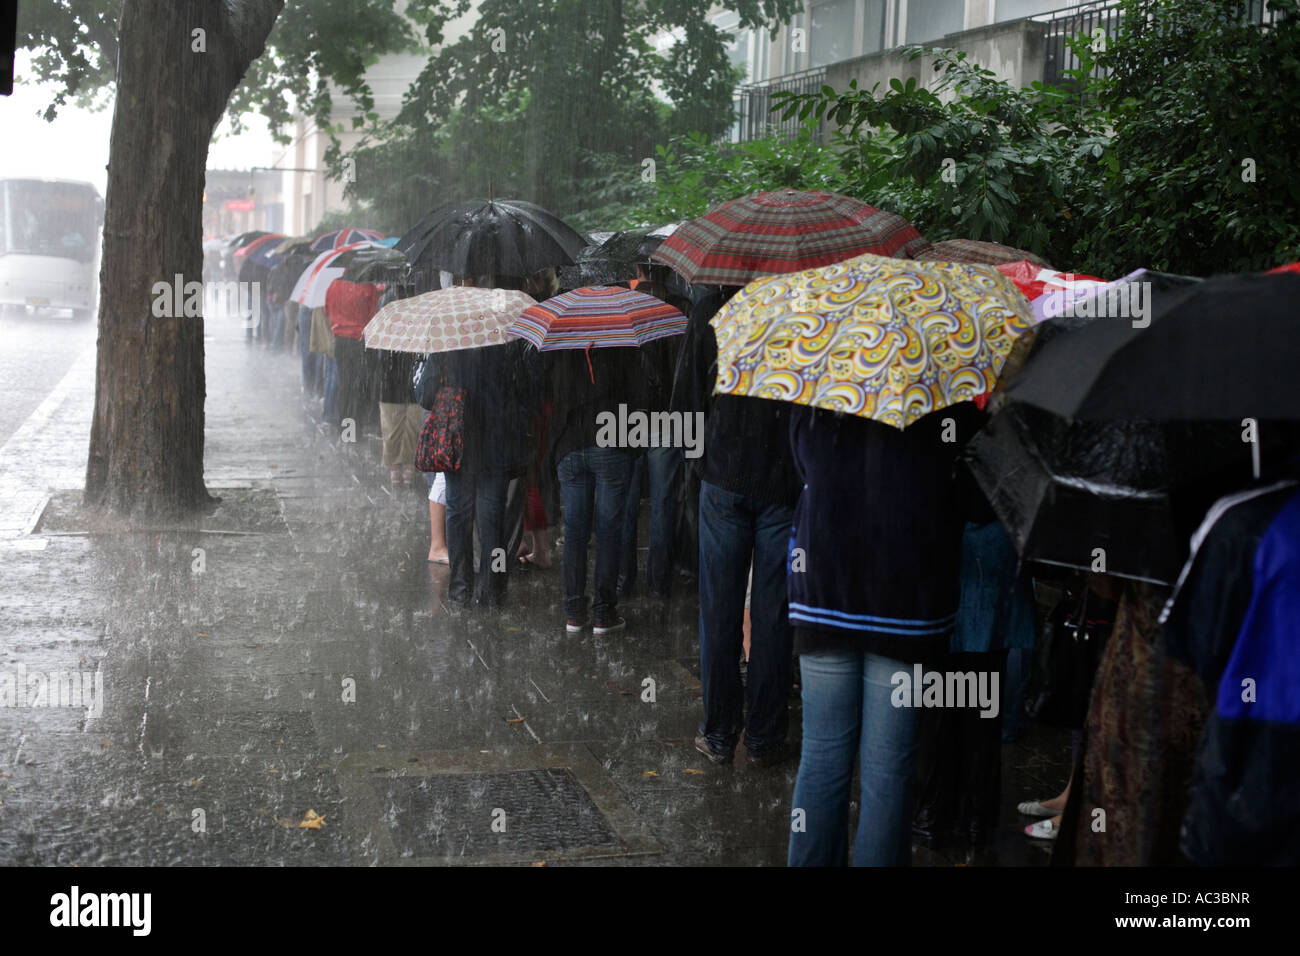 Les gens d'attente dans une tempête de pluie d'été pour Madame Tussaud sur Marylebone Road à Londres Banque D'Images